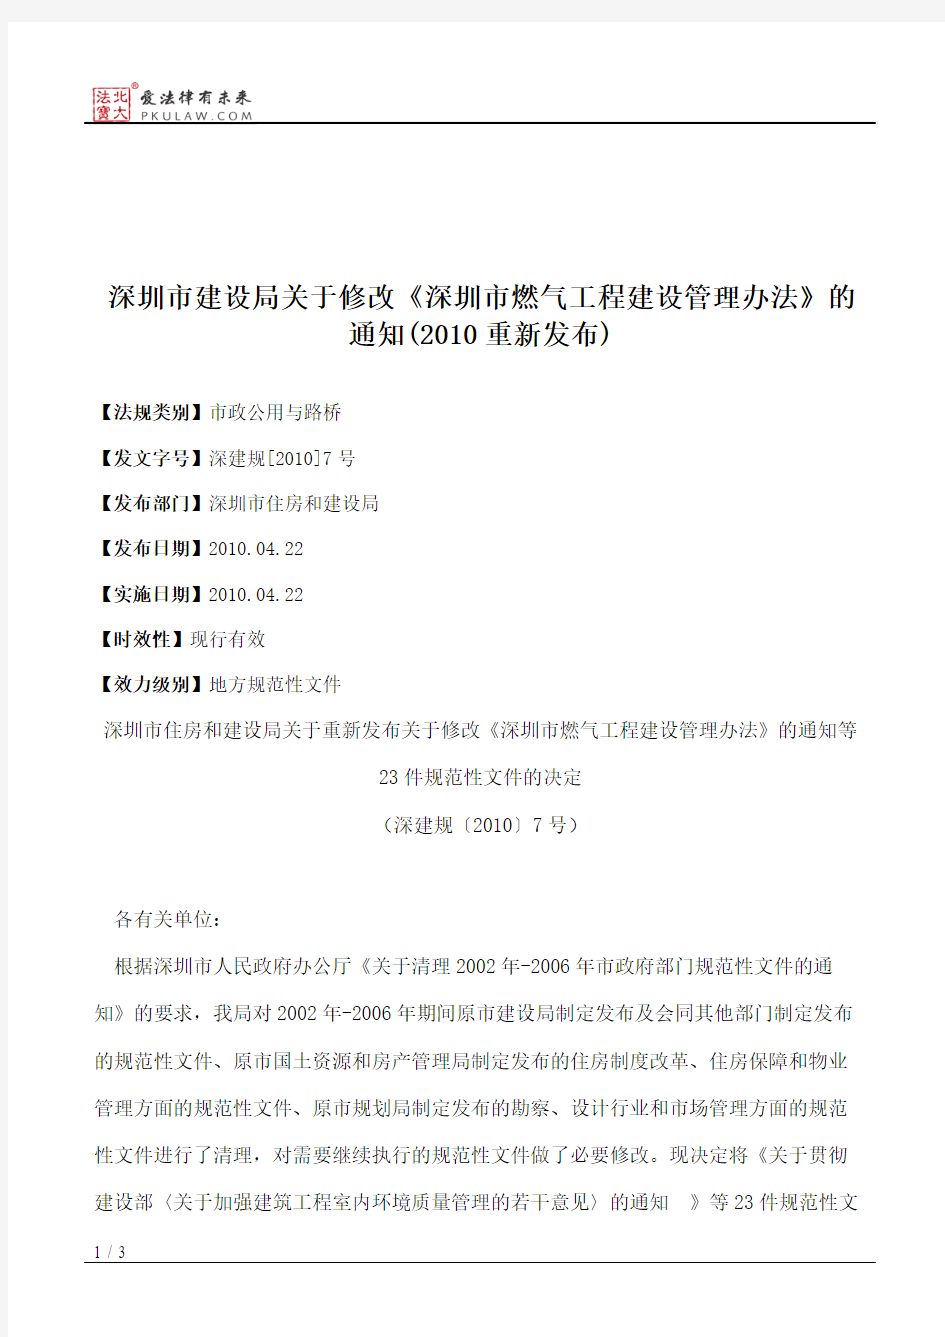 深圳市建设局关于修改《深圳市燃气工程建设管理办法》的通知(2010